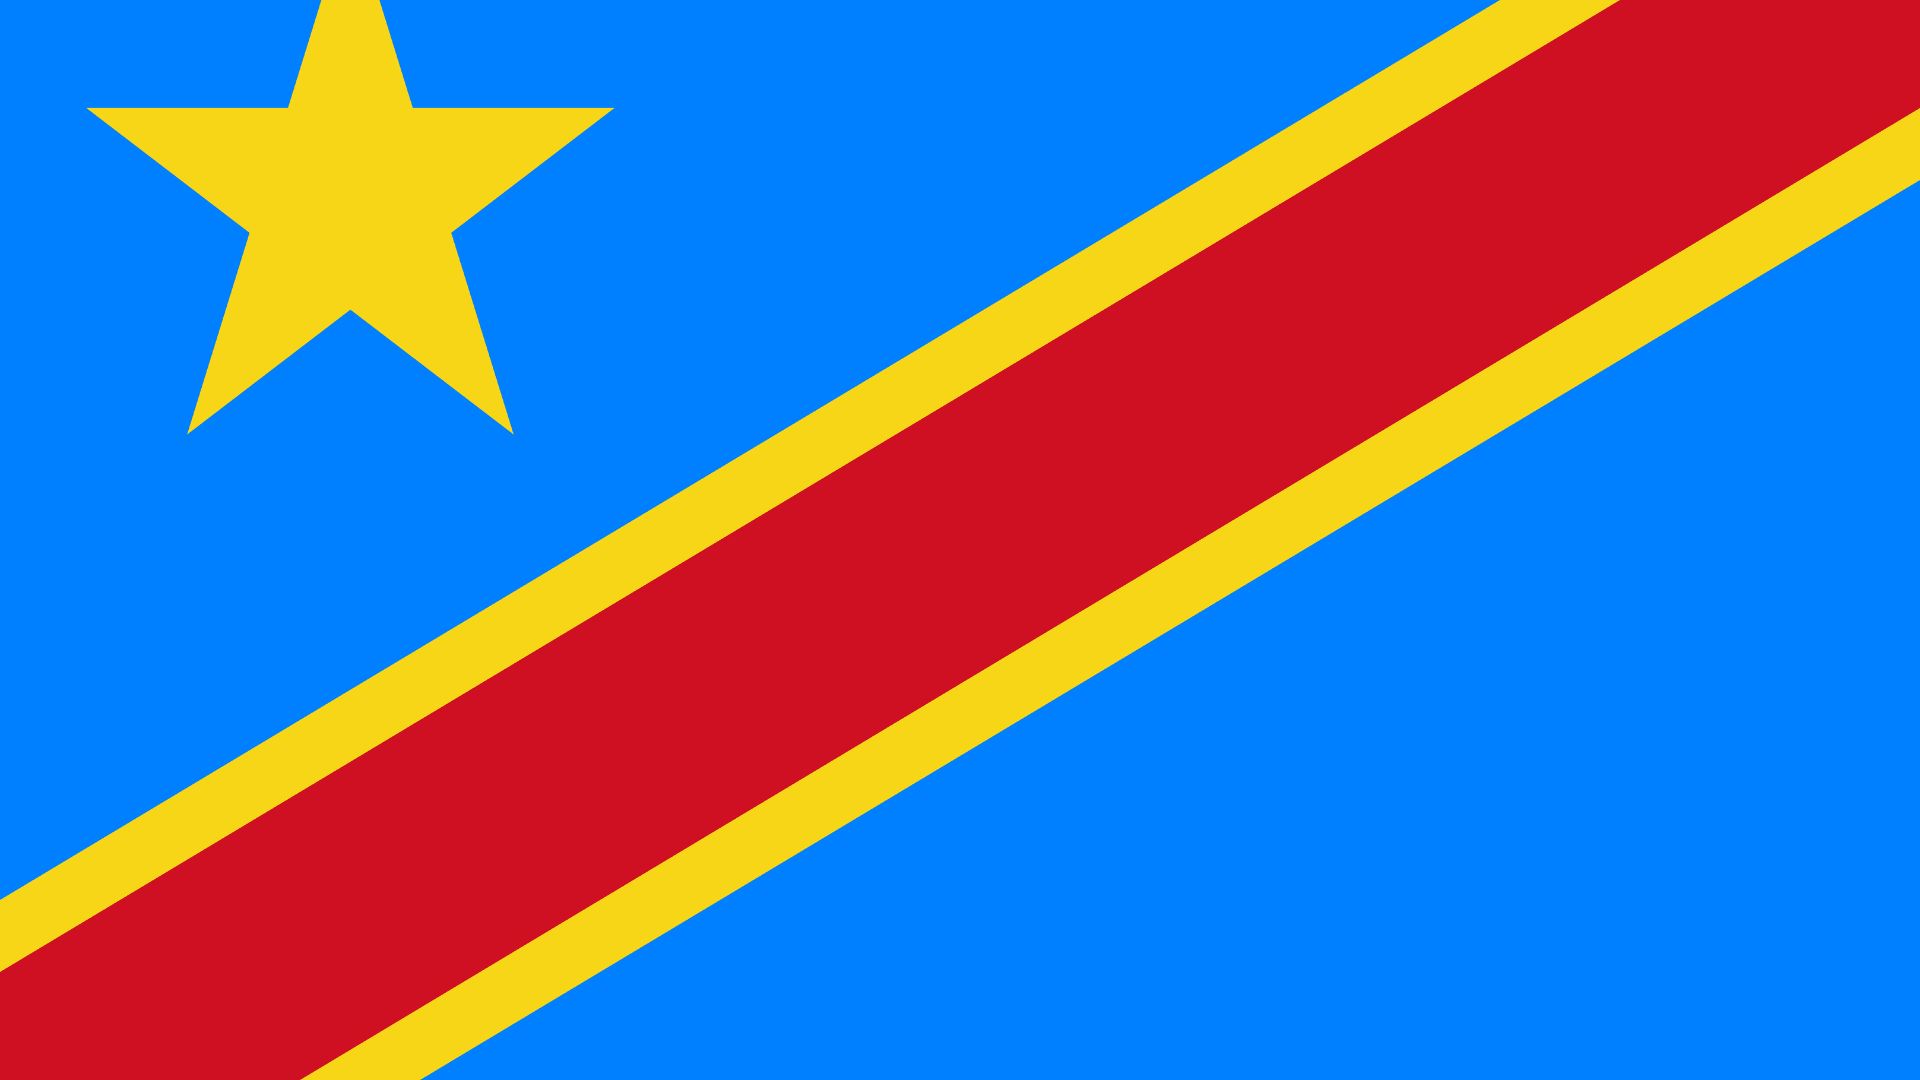 Bandeira na cor azul-celeste, adornada com uma estrela amarela no canto superior esquerdo e cortada diagonalmente por uma faixa vermelha com um contorno em amarelo.